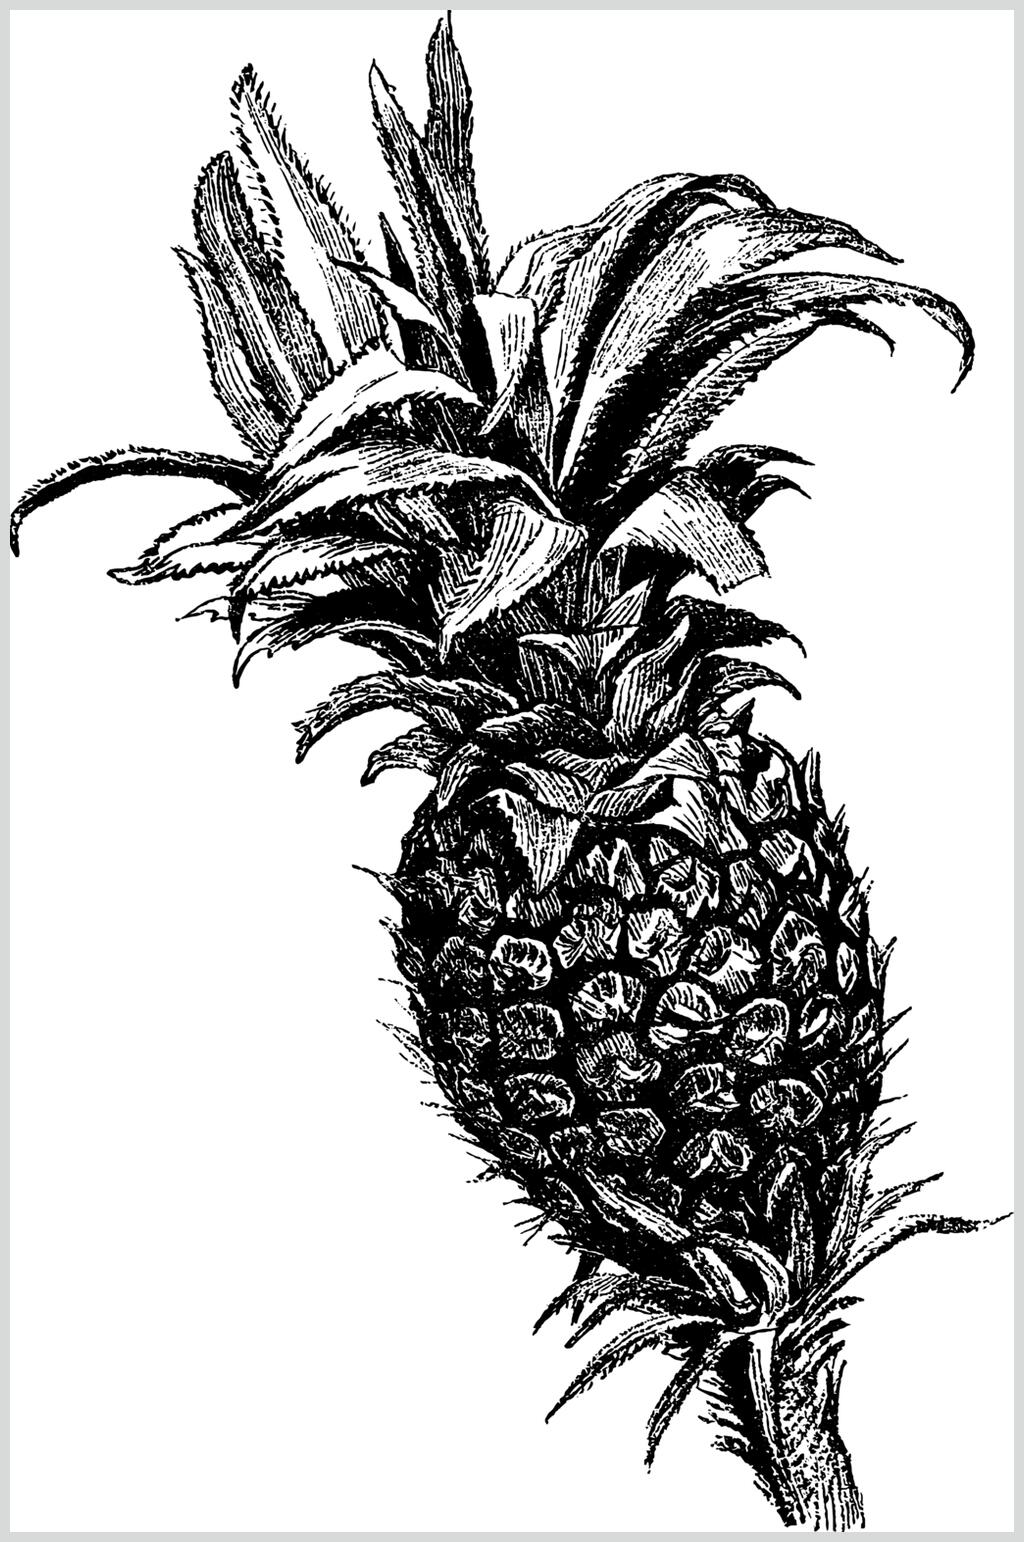 菠萝黑色简约水果素描手绘矢量素材素材